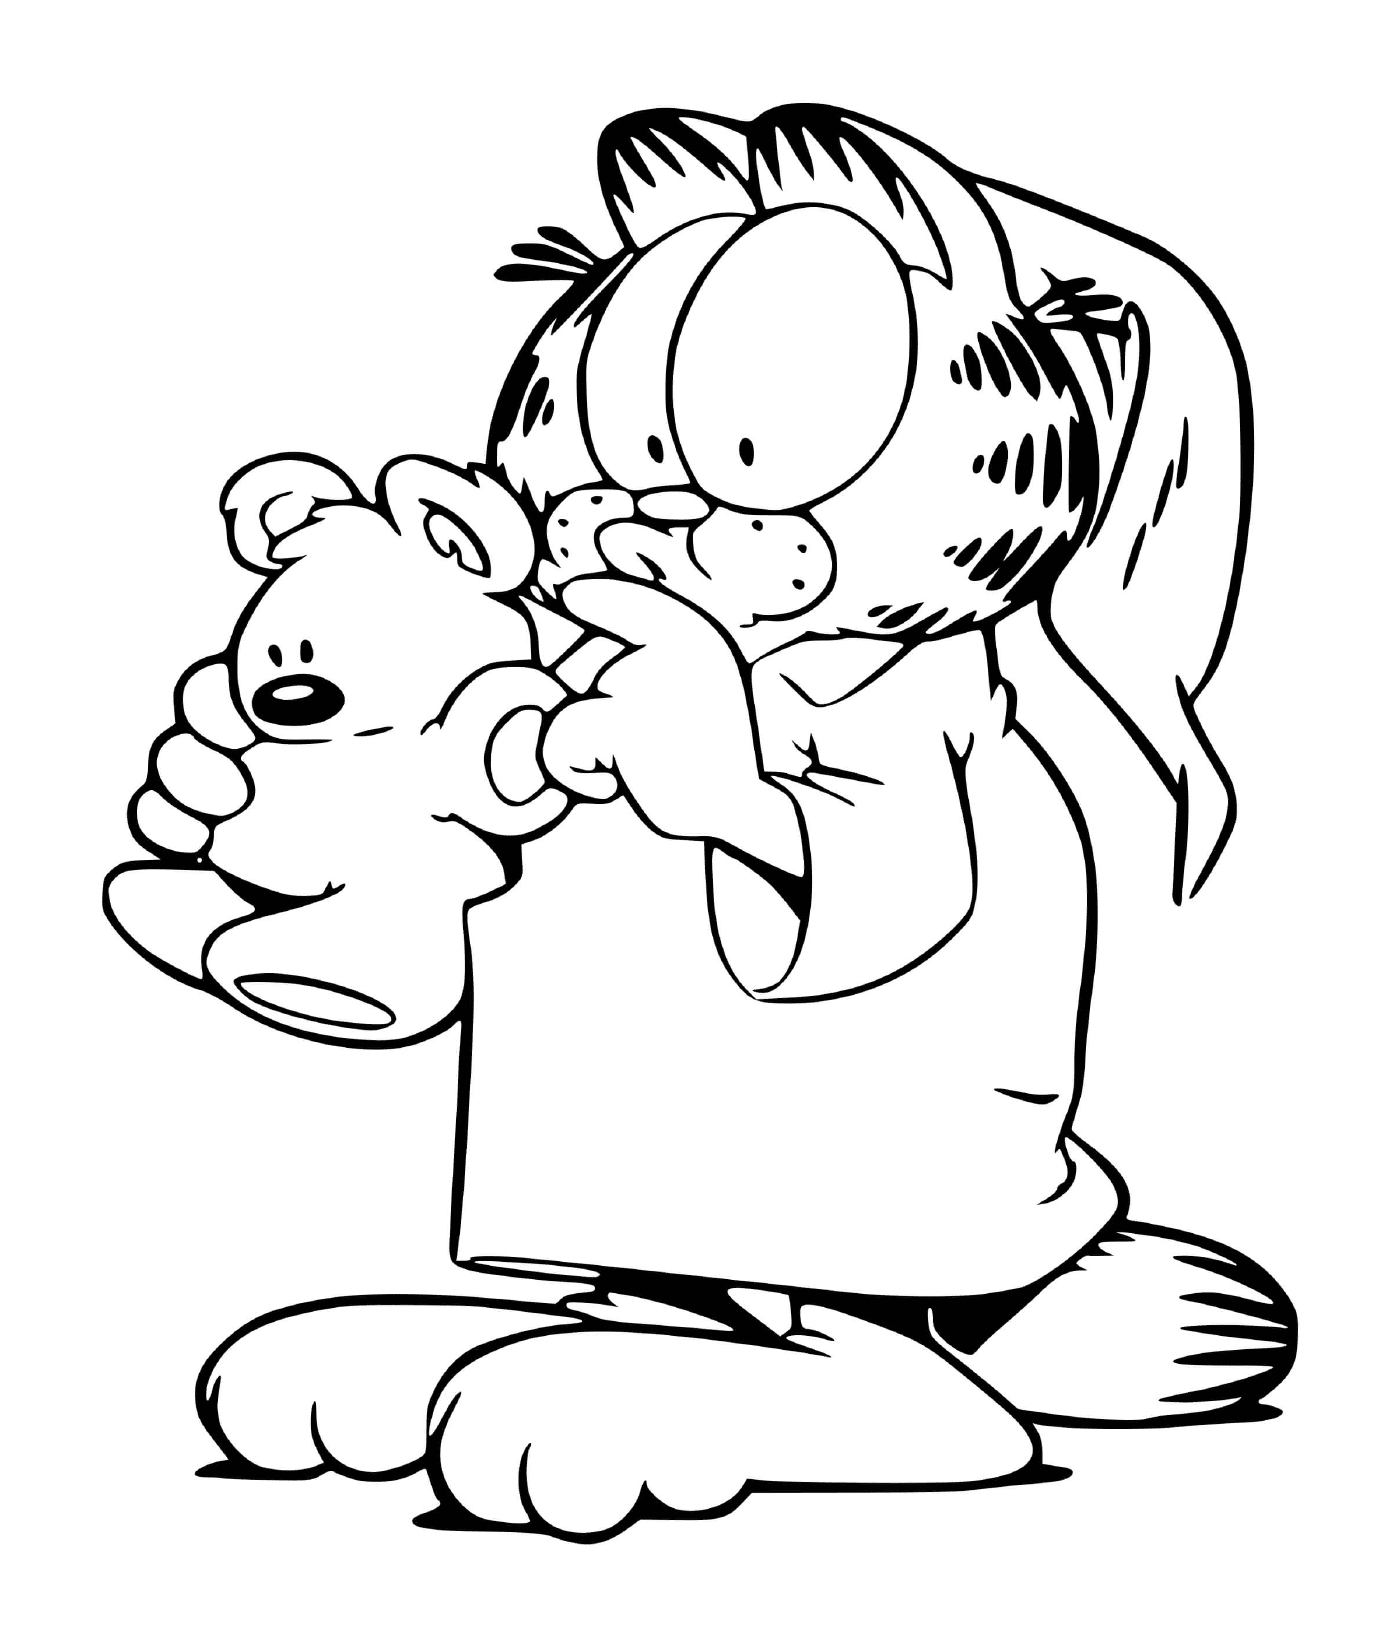  Garfield in pigiama con il suo orsacchiotto 